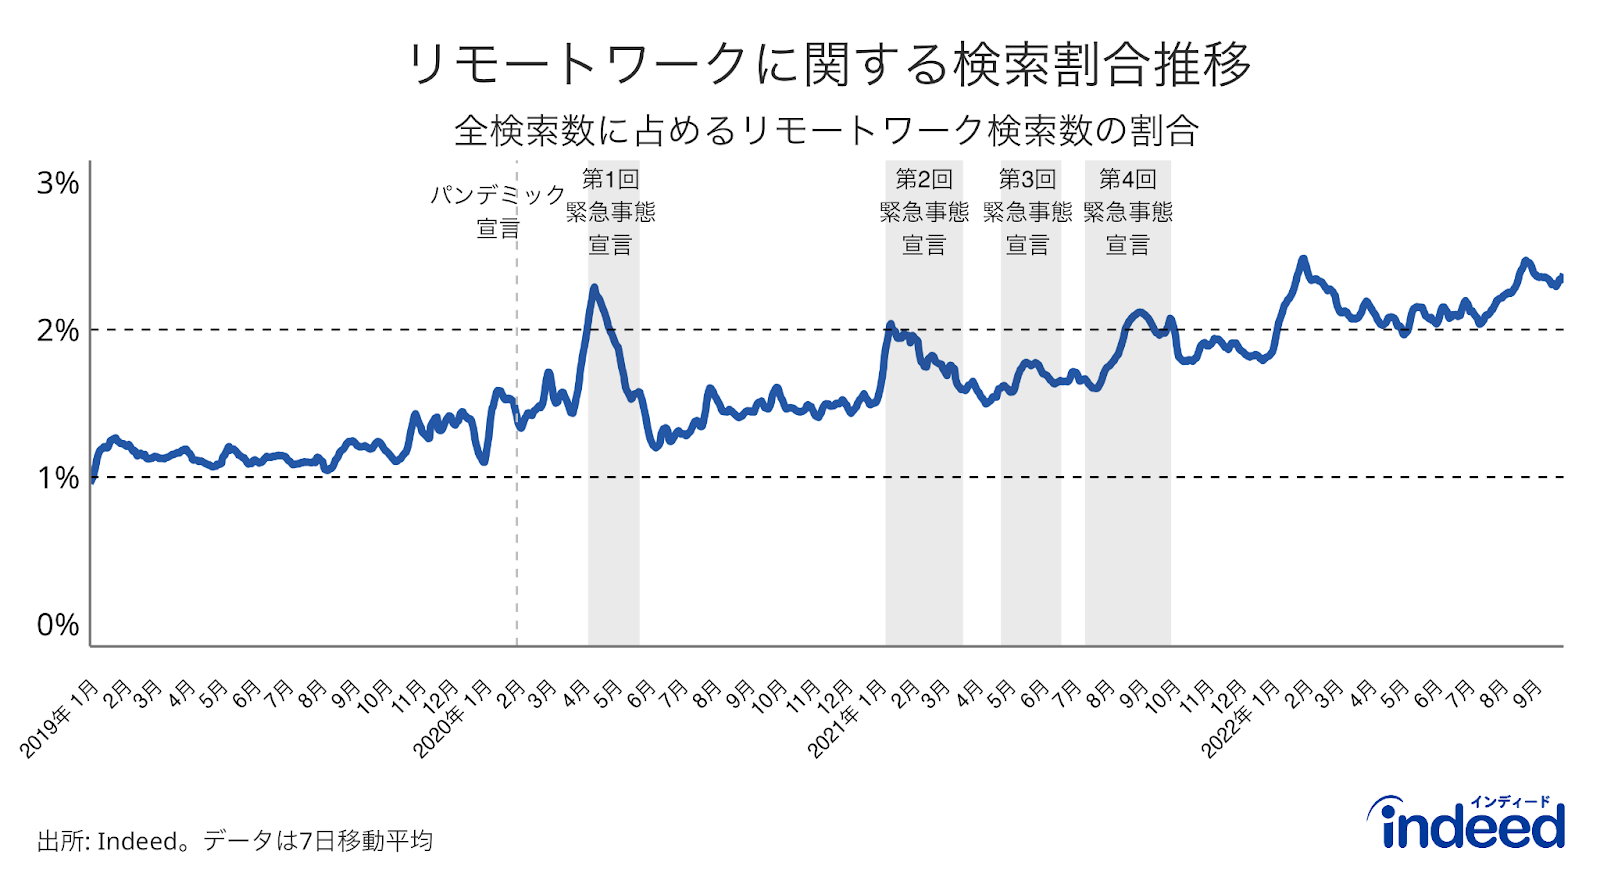 この折れ線グラフは、日本の2019年1月から2022年9月までのリモートワーク関連の求人検索割合を示したもの。灰色の期間は緊急事態宣言の期間を示す。求人検索のデータはIndeedから、緊急事態宣言の期間の情報については内閣官房のホームページから取得。